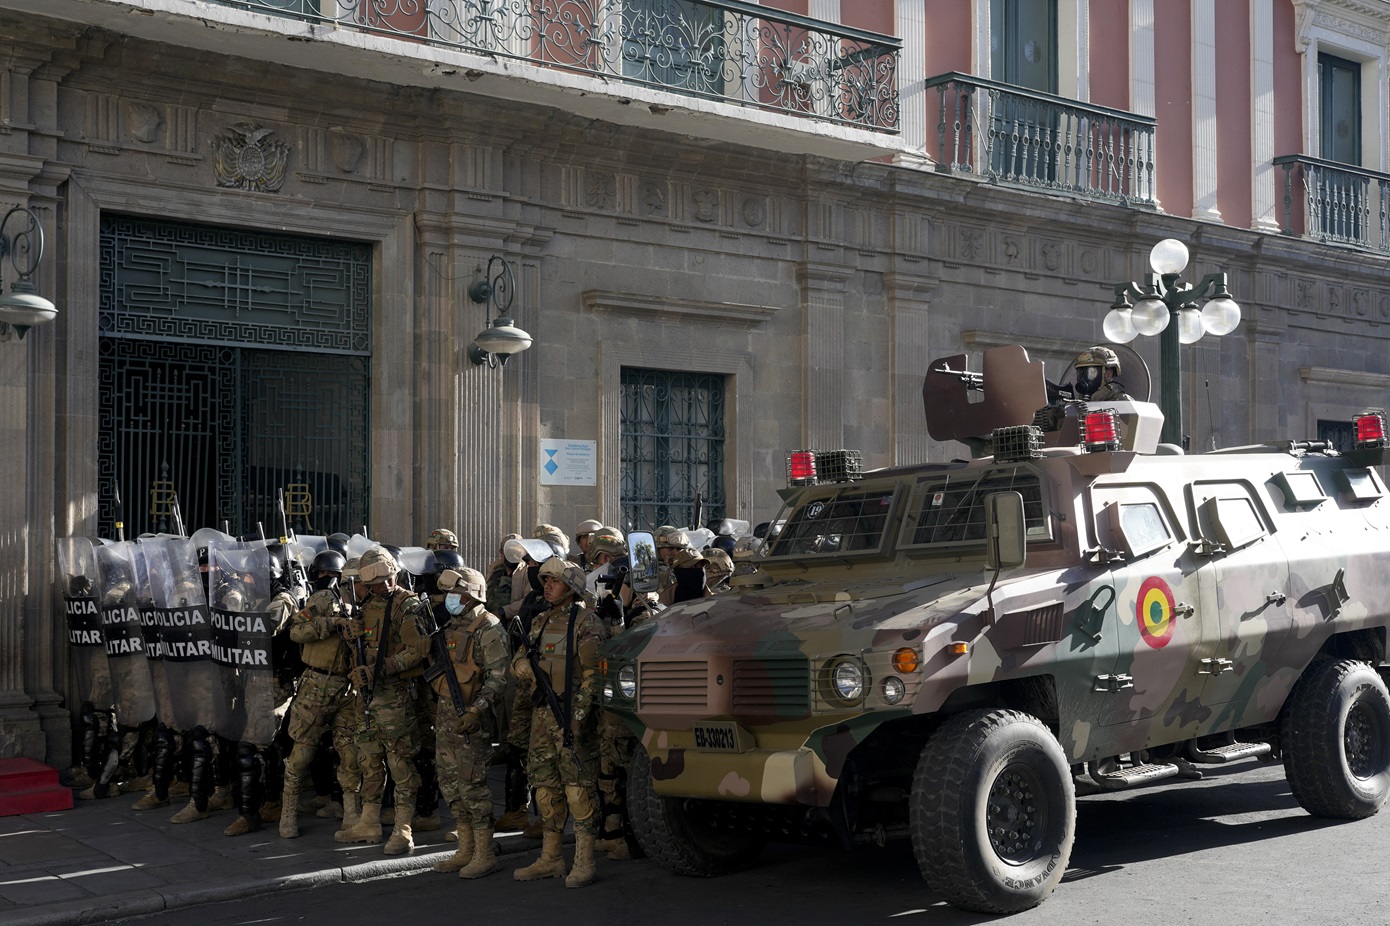 Με τεθωρακισμένο όχημα εισέβαλε στο προεδρικό μέγαρο ο στρατός της Βολιβίας – Εντείνεται η ανησυχία για πραξικόπημα